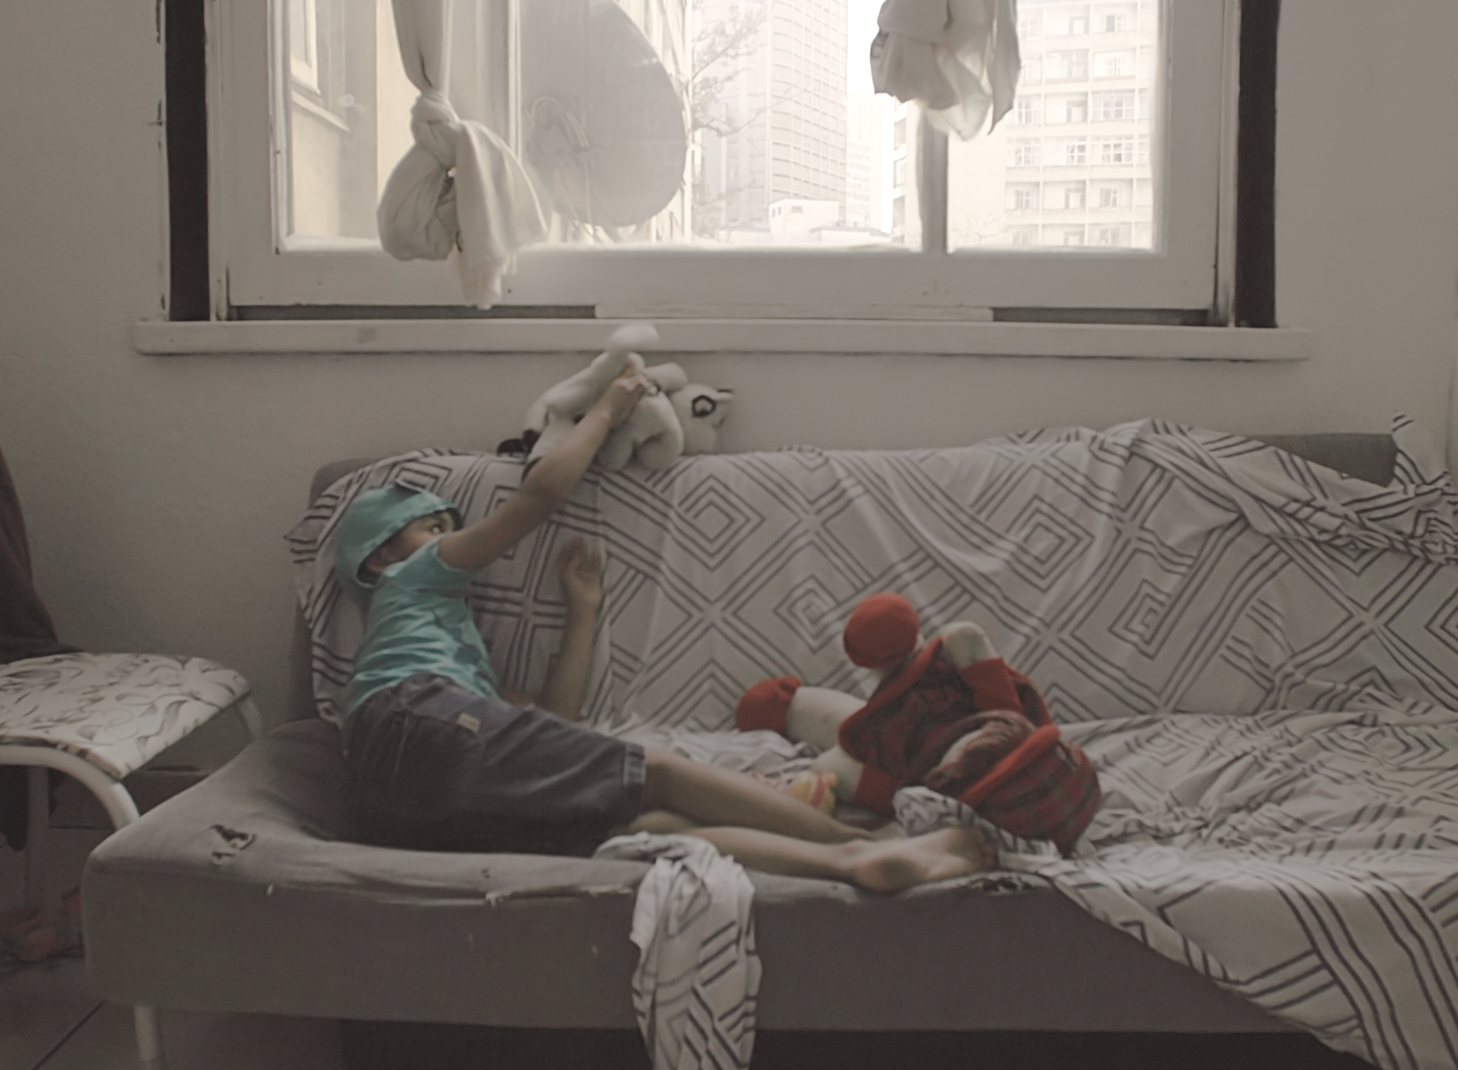 Menino está sentado em um sofá, brincando com seus bonecos.